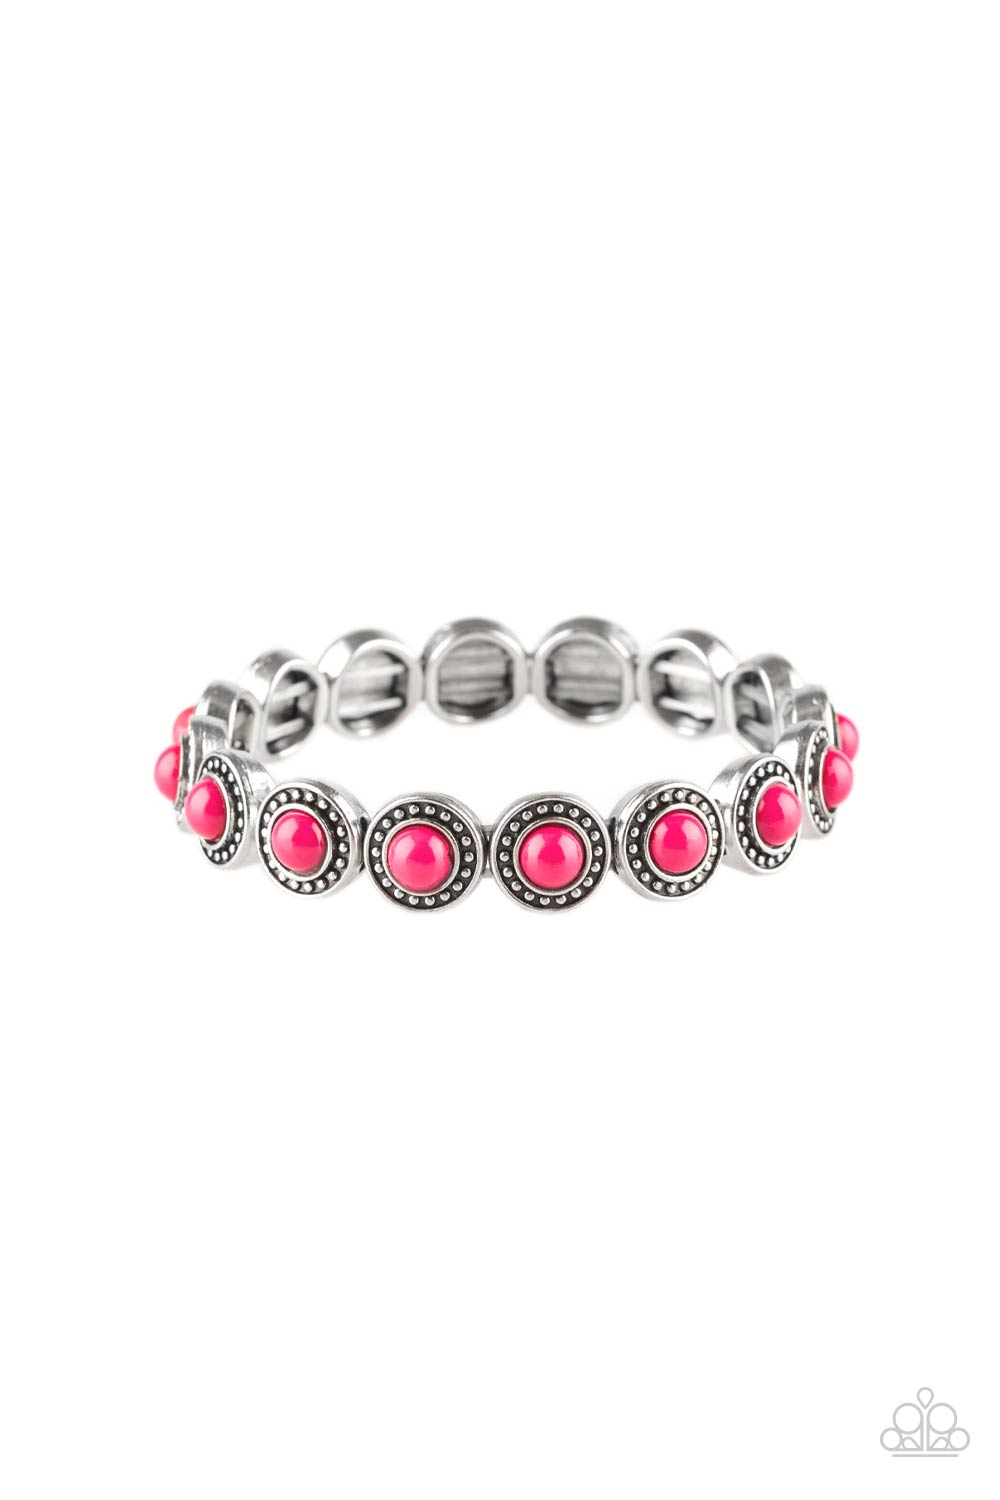 Globetrotter Goals - Pink Bracelet